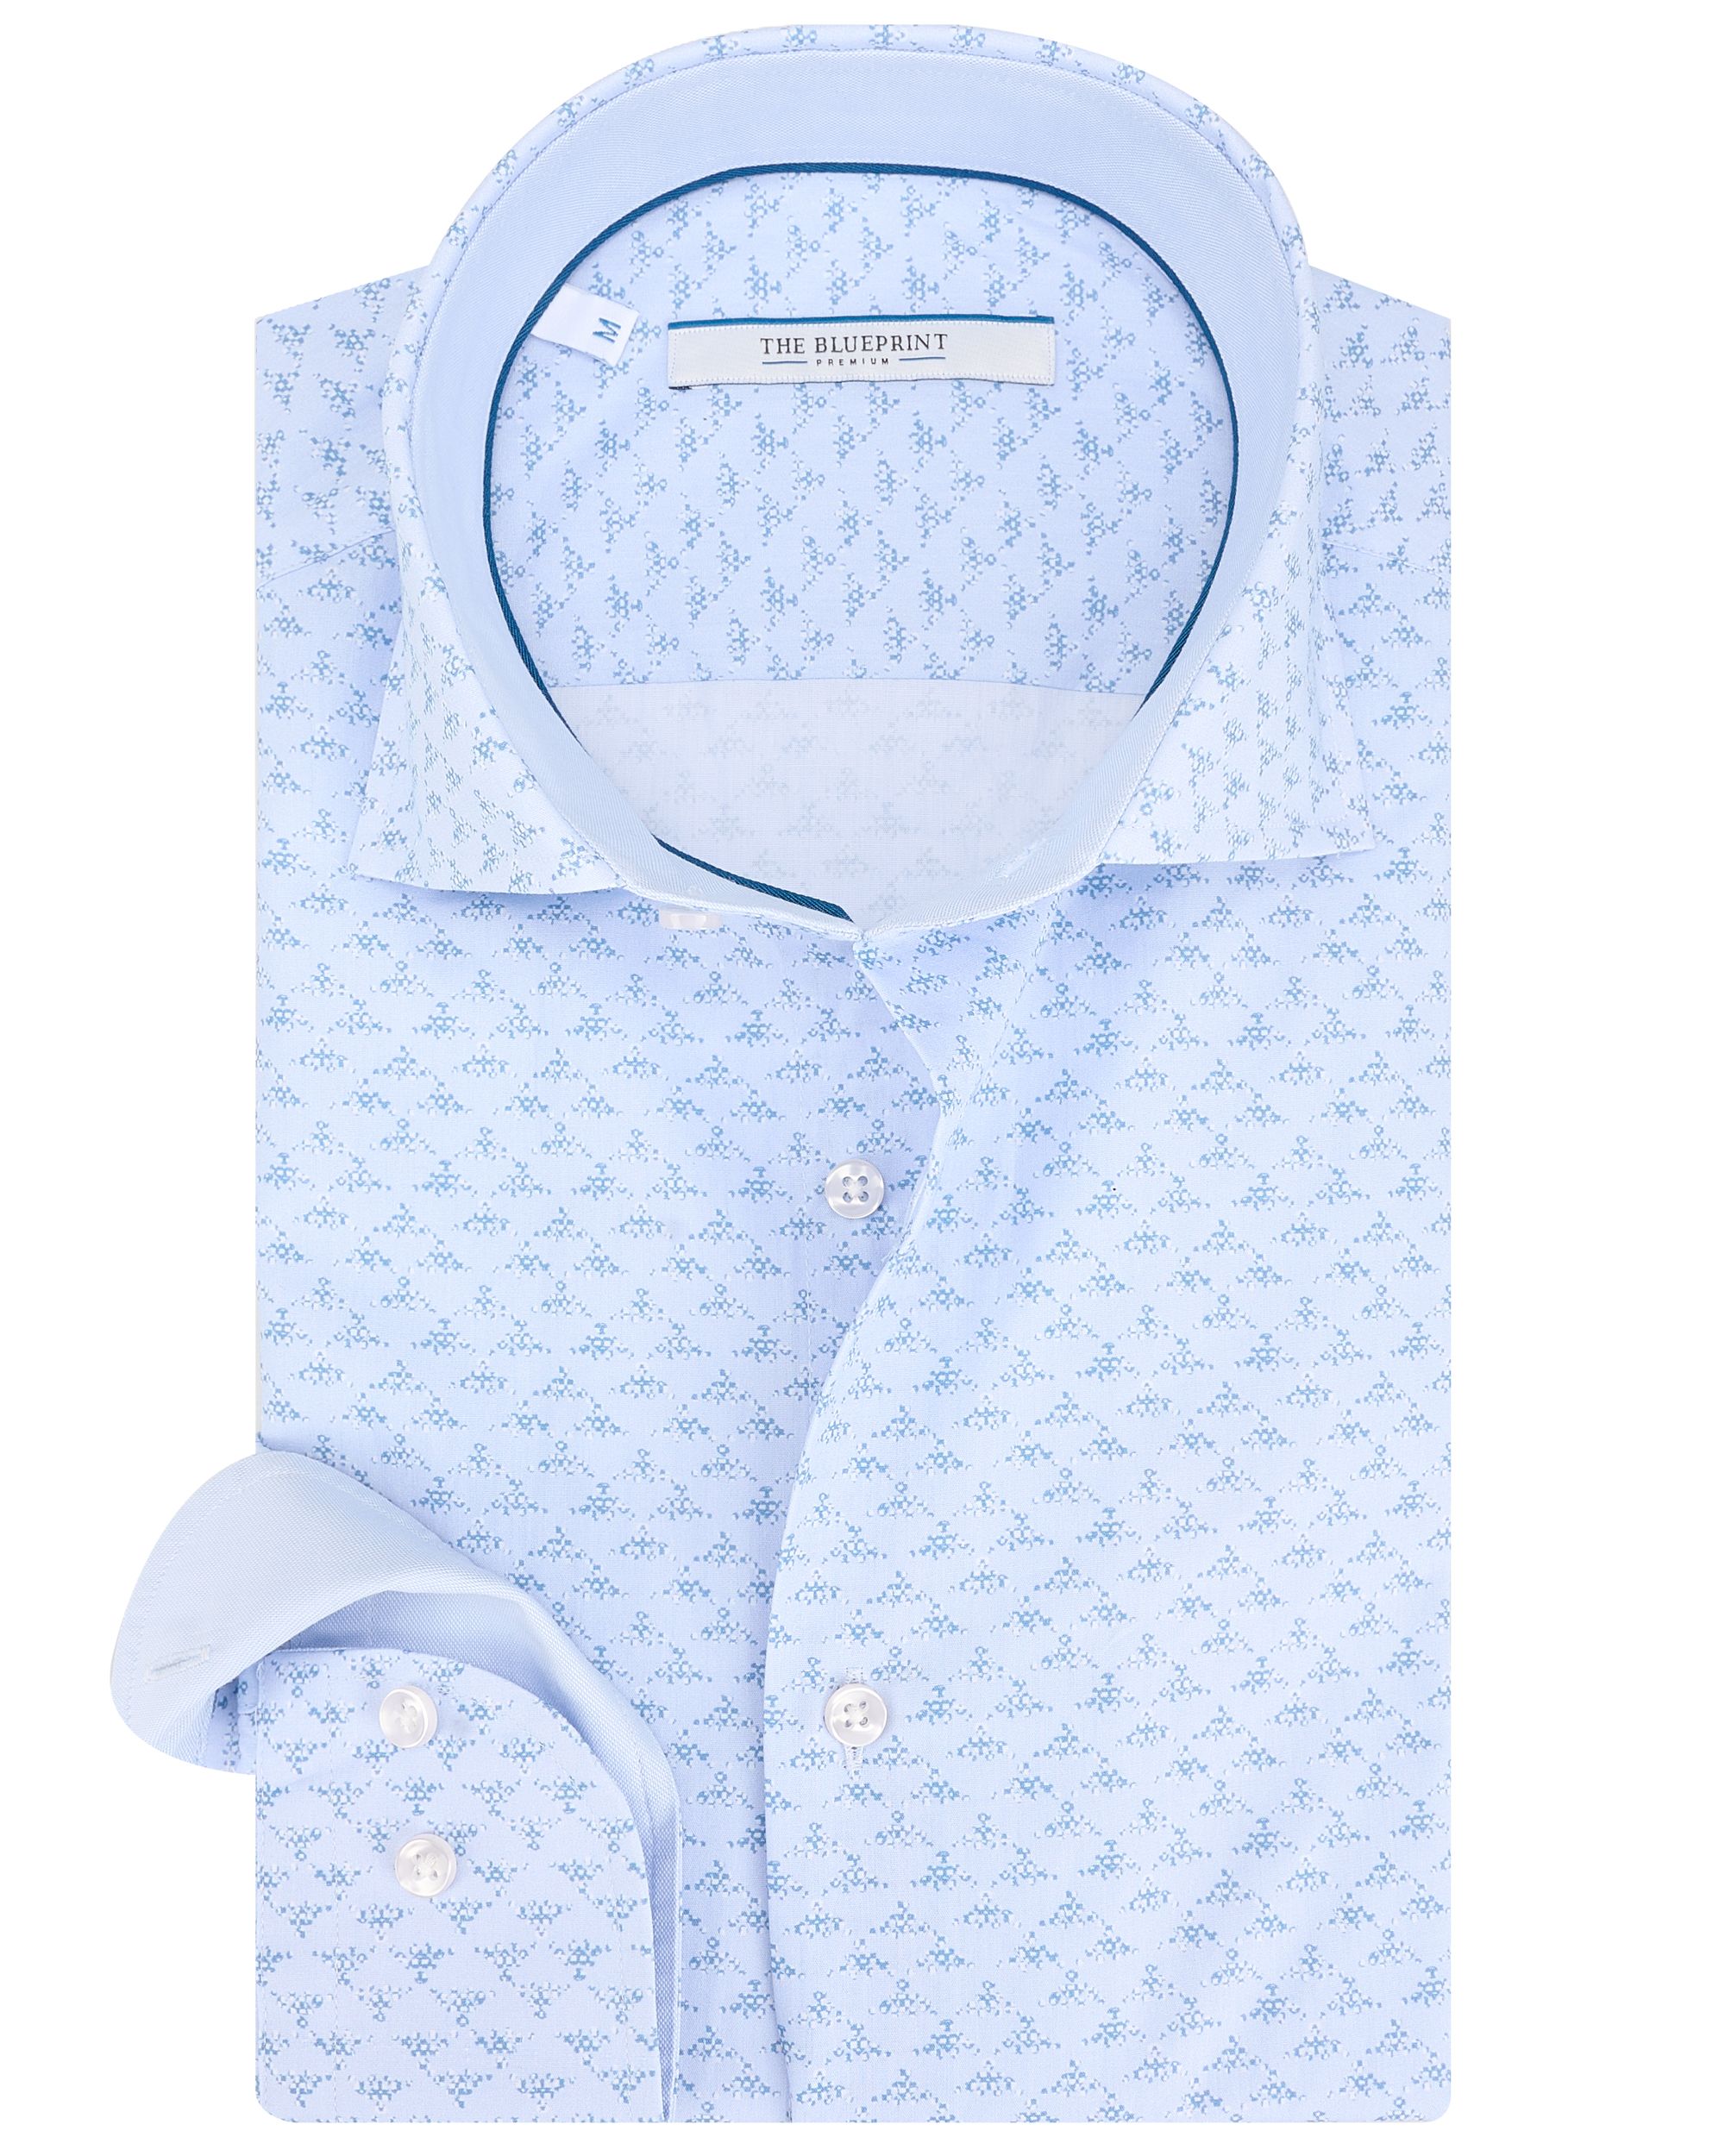 The BLUEPRINT Premium - Trendy overhemd LM Lichtblauw dessin 086646-001-L